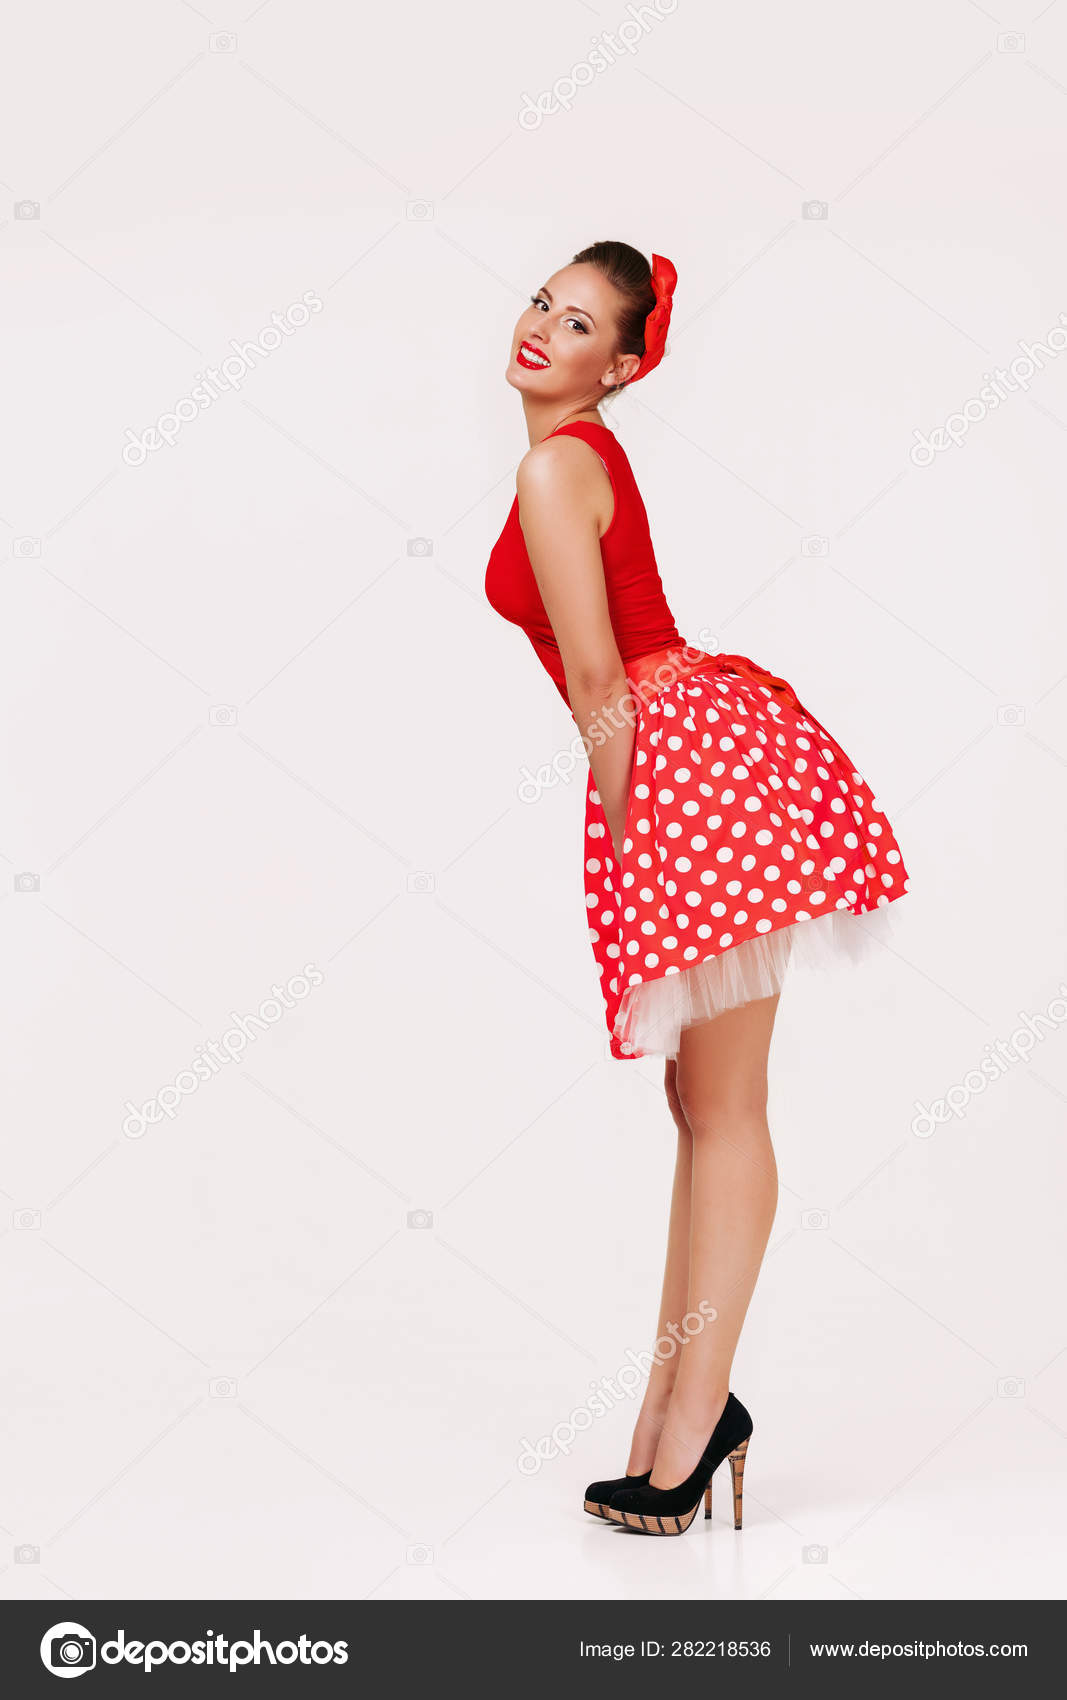 Sonriente pin up mujer vestido rojo lunares: fotografía de stock © erstudio #282218536 Depositphotos